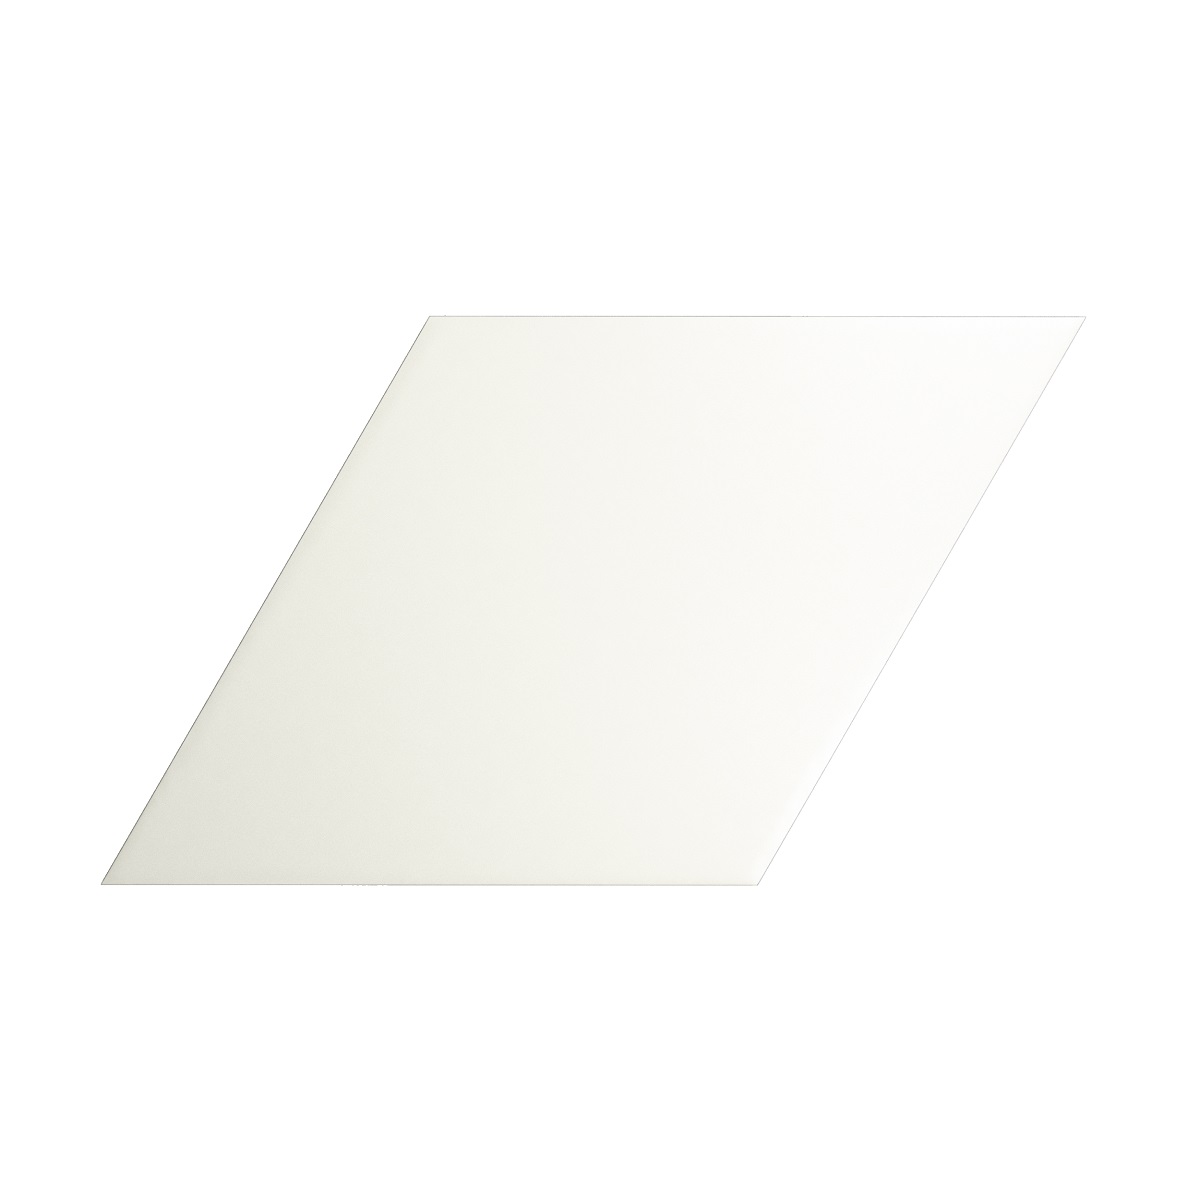 WT-ROMBO AREA WHITE MATT<br />
15x25.9cm